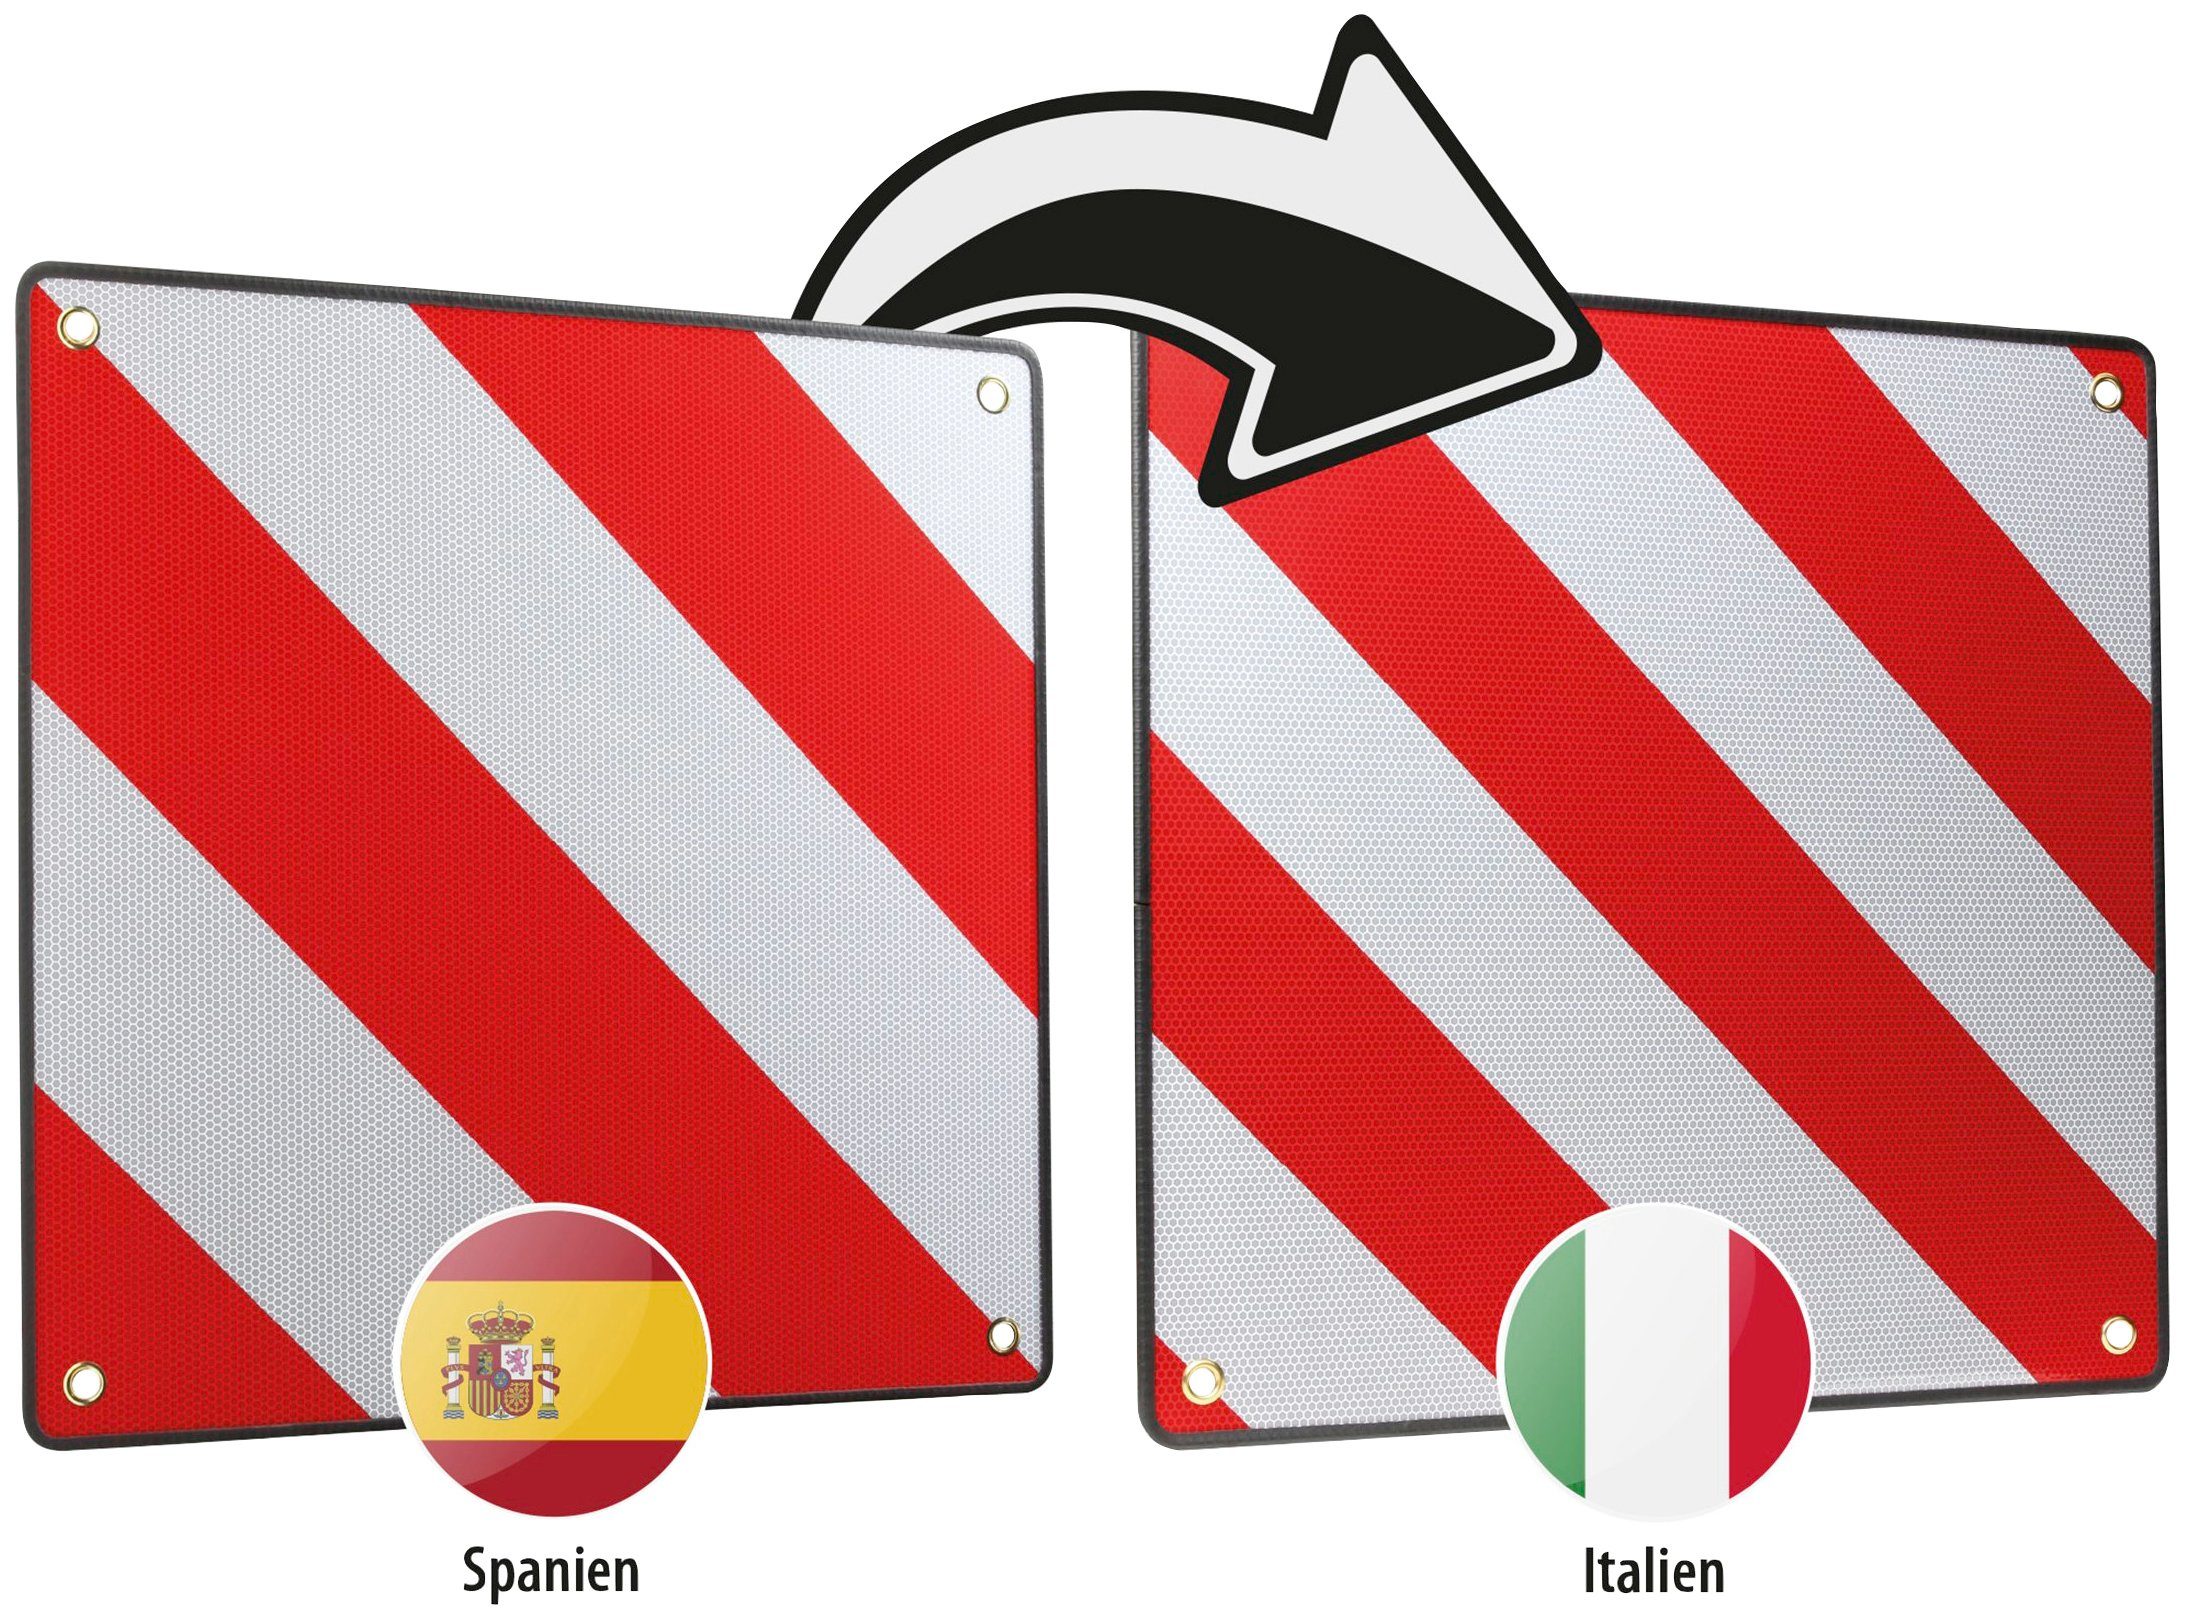 Tafel Spanien 46044 und für Italien, Aluminium 2 1, CALIMA Warntafel in aus